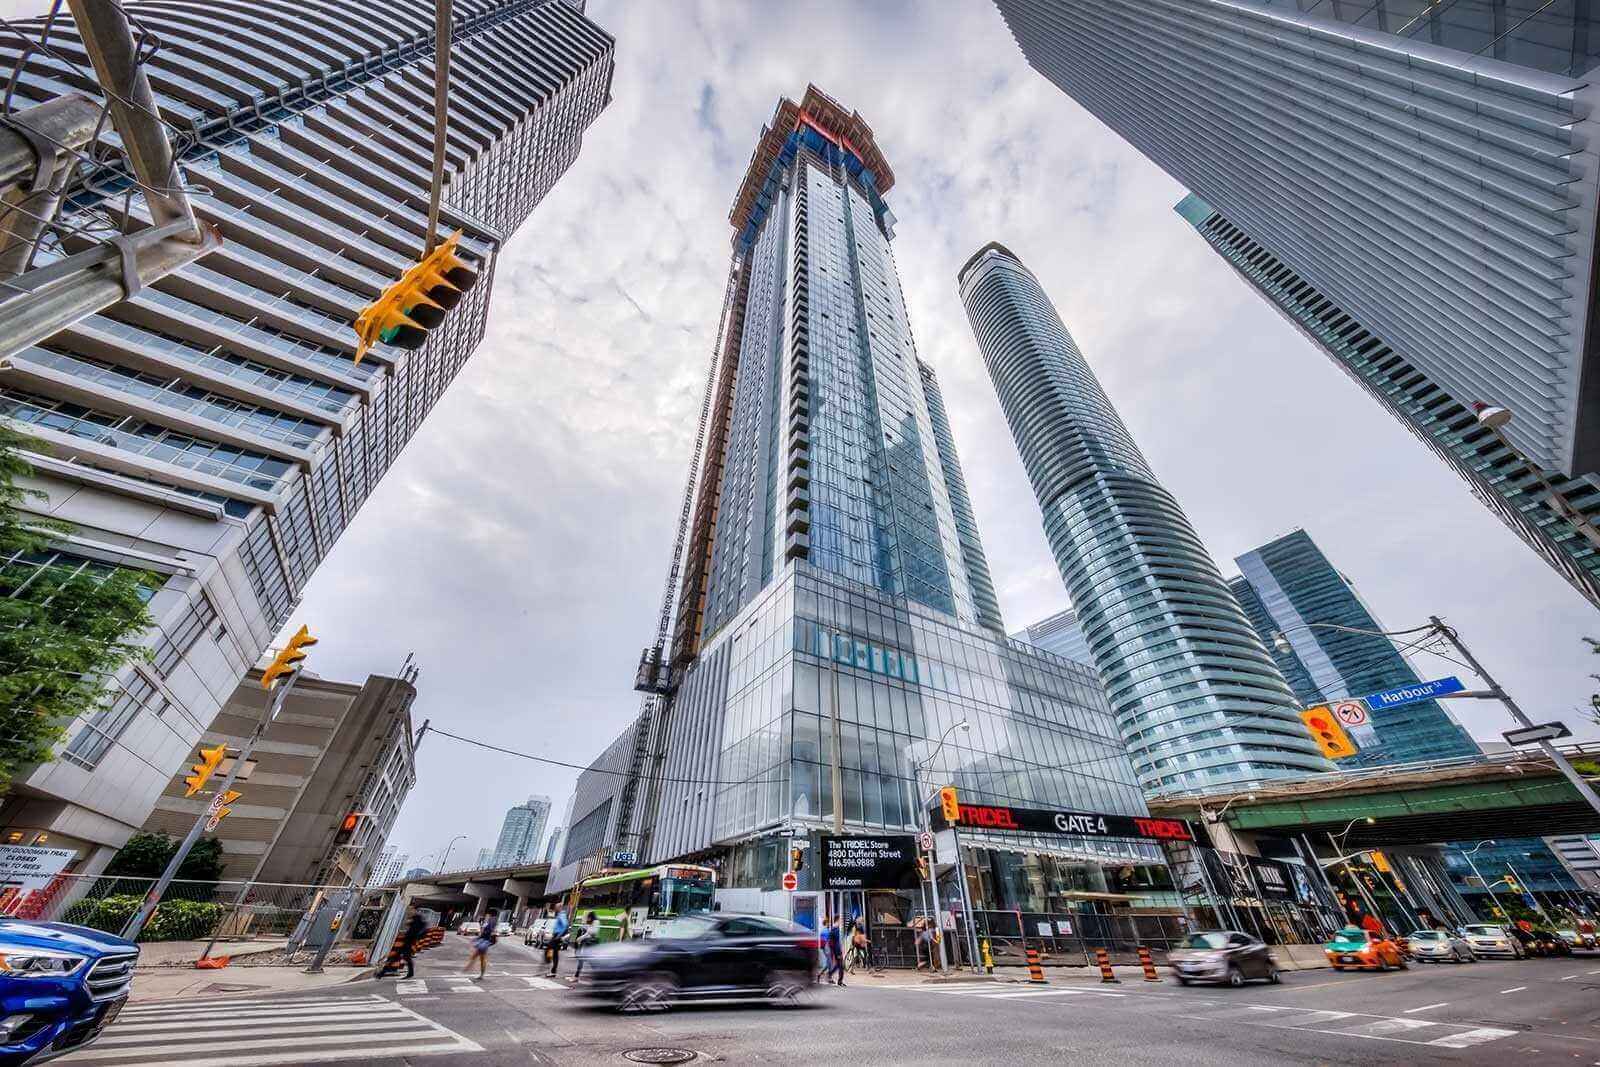  tallest condo in Toronto Ten York